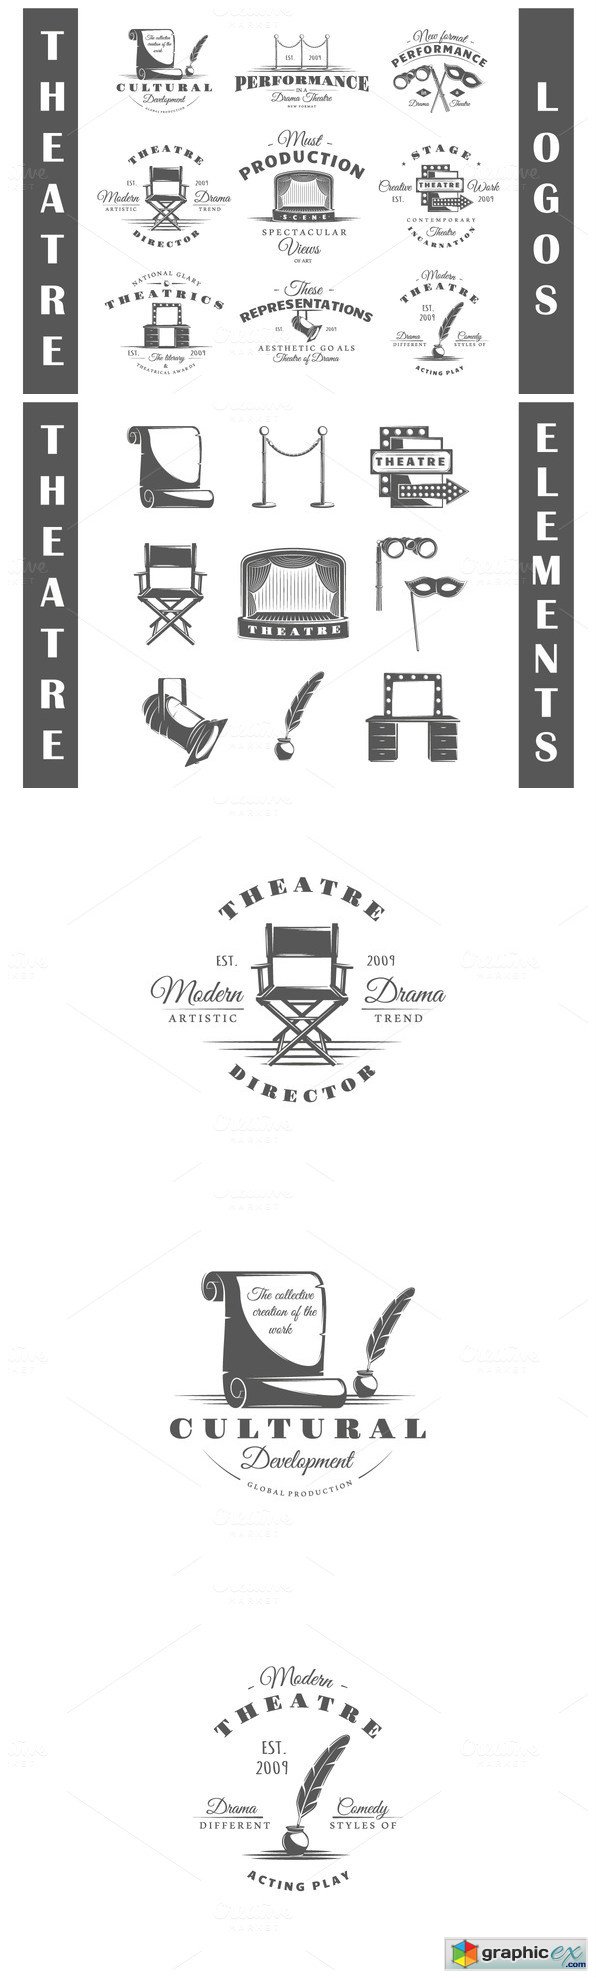 9 Theatre logos templates Vol3